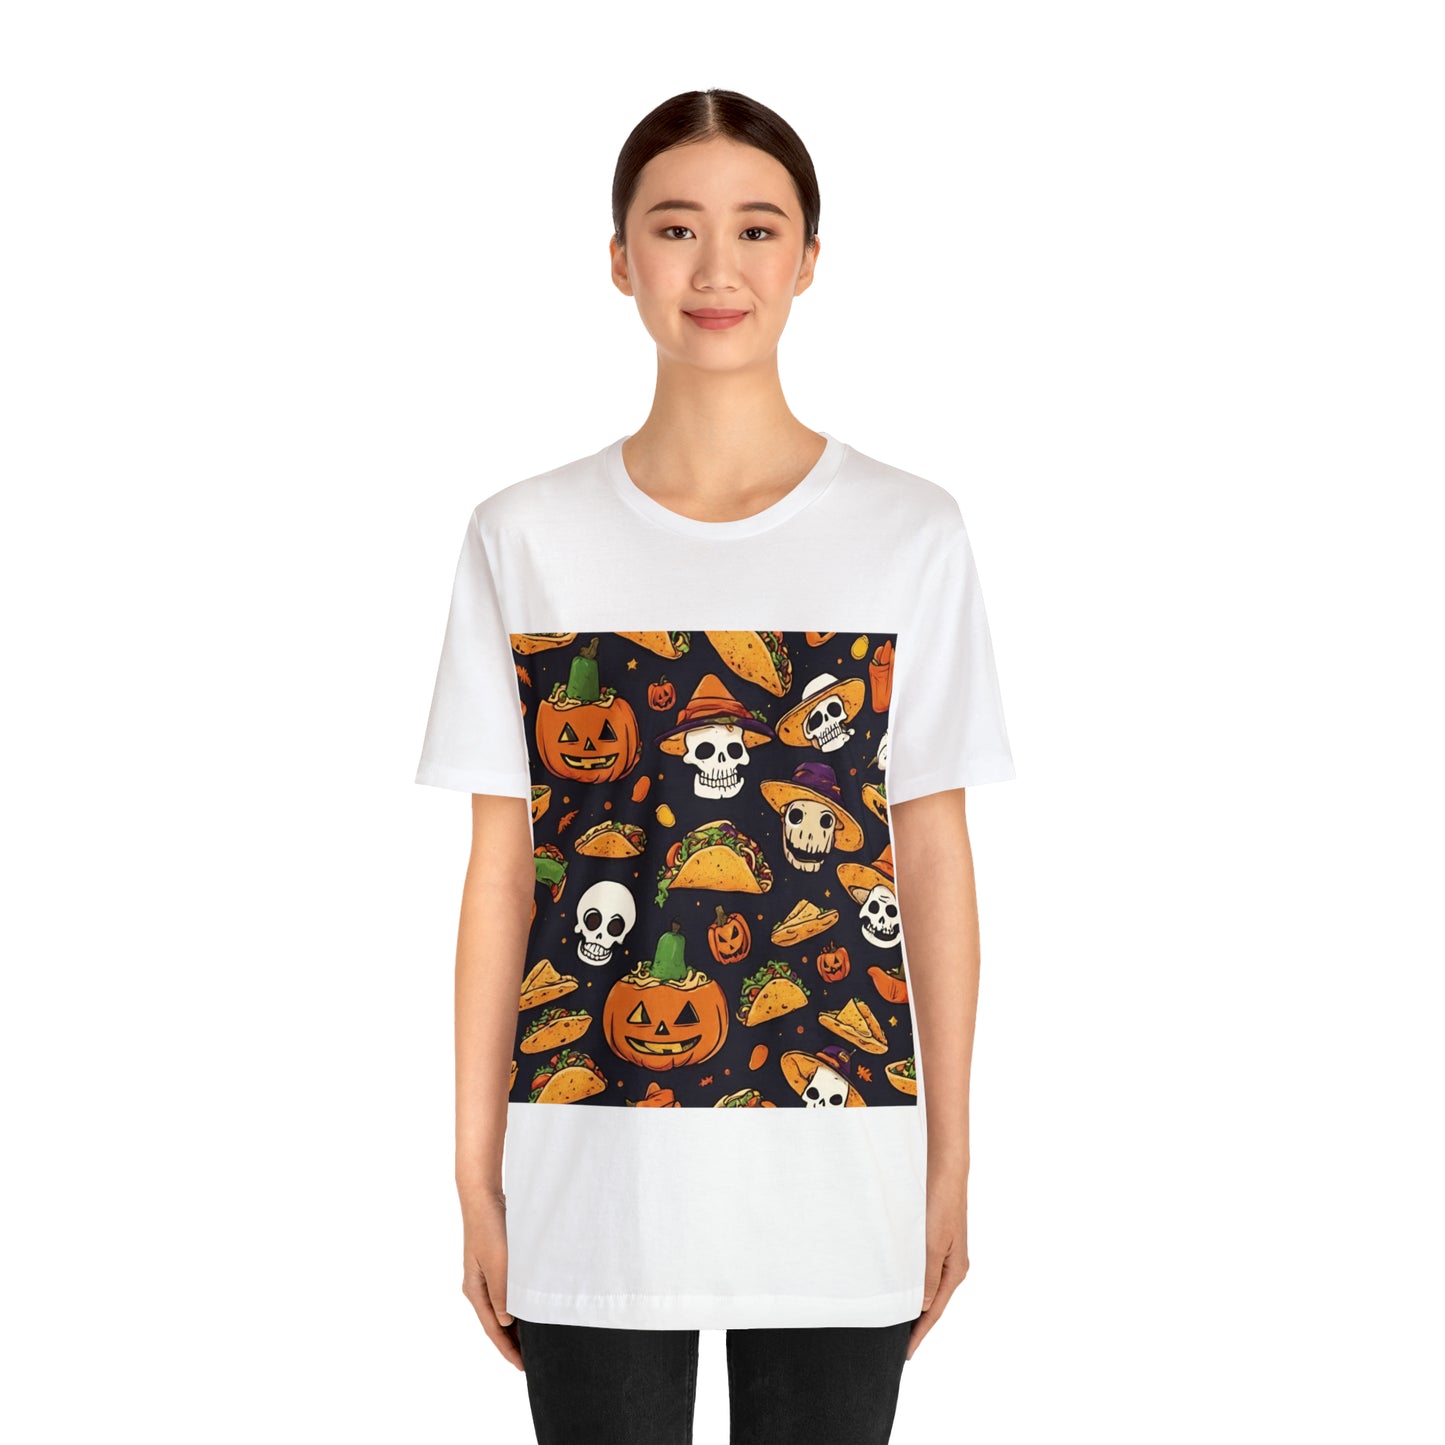 Tacos And Halloween T-Shirt | Halloween Gift Ideas T-Shirt Petrova Designs